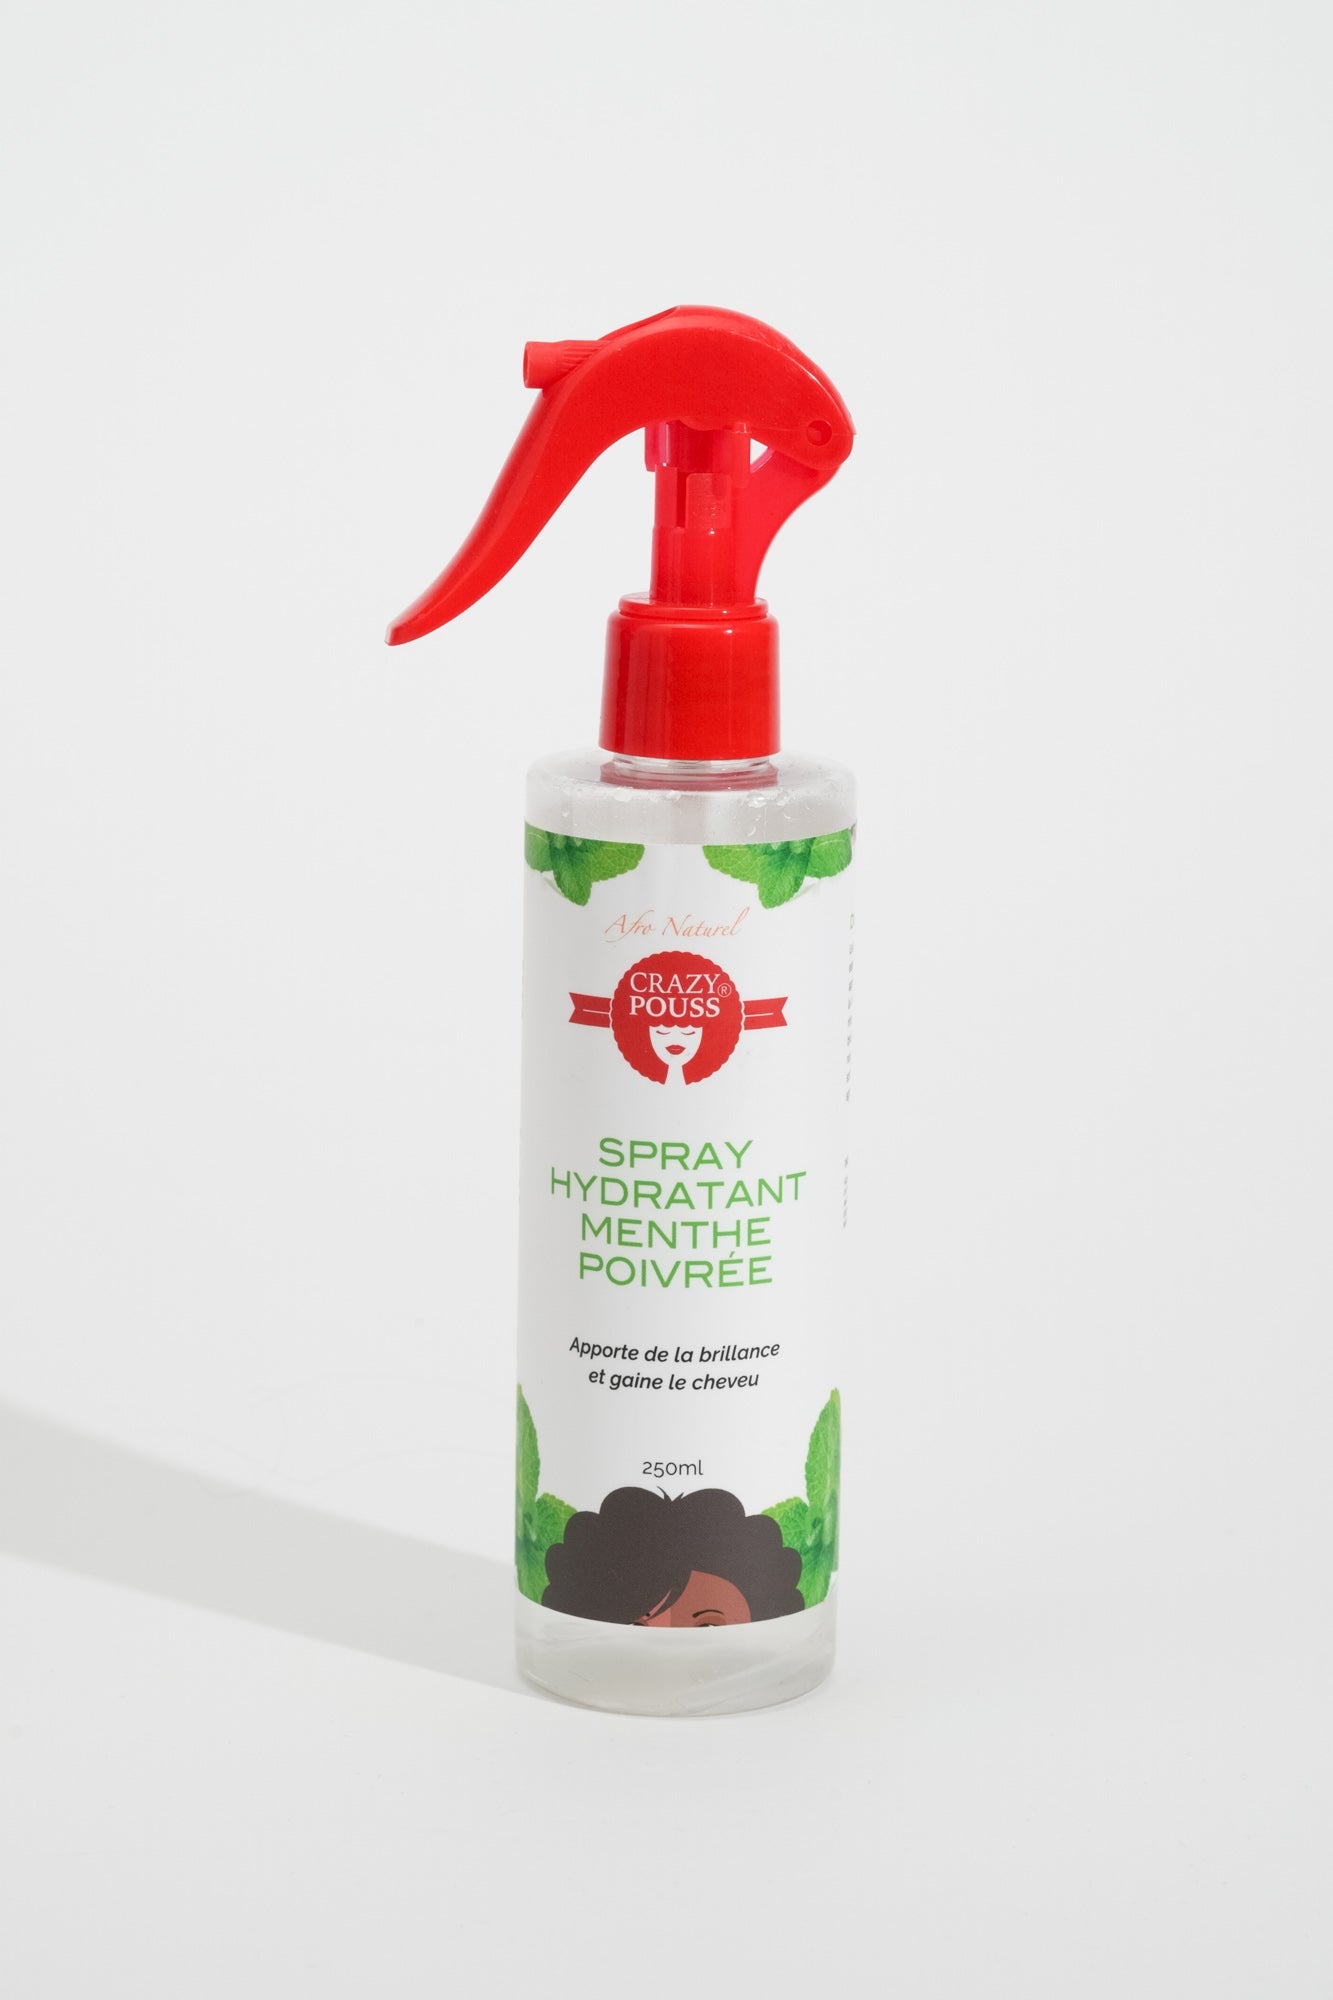 CRAZY POUSS - Spray hydratant à la menthe poivrée - Soin capillaire pour nettoyer et hydrater en profondeur vos cheveux crépus ou ondulés